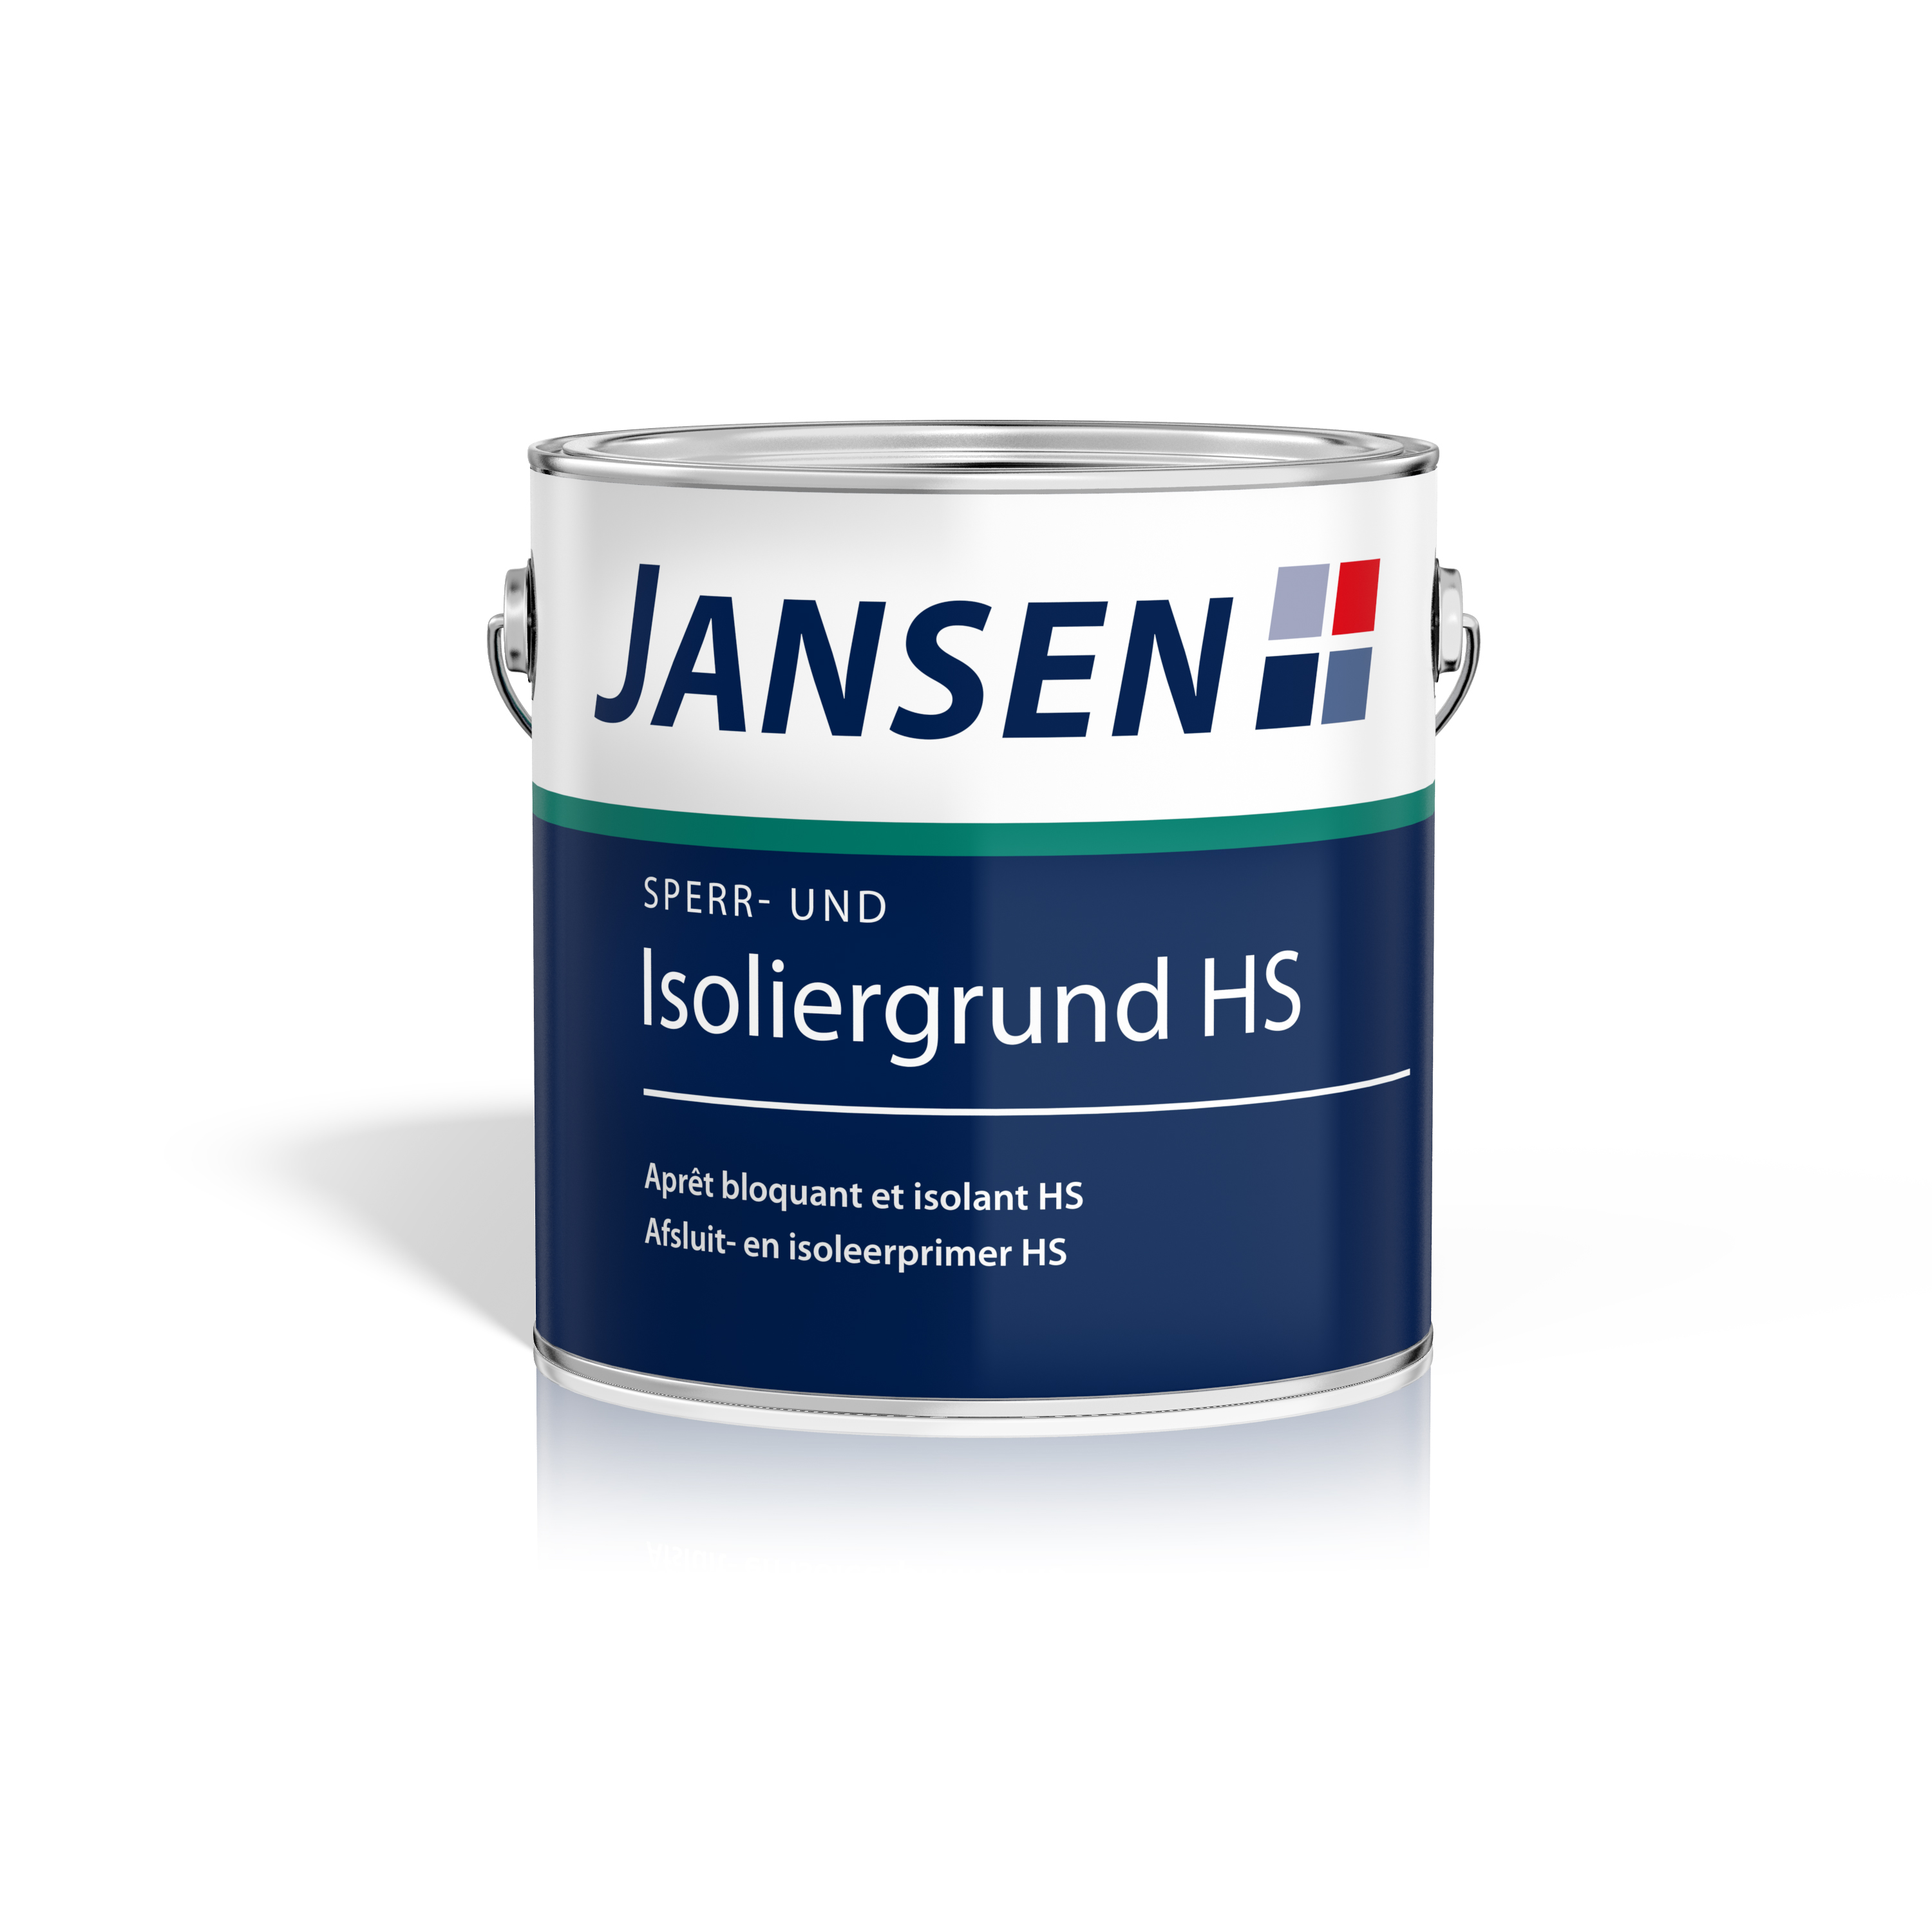 Jansen Sperr- und Isoliergrund HS